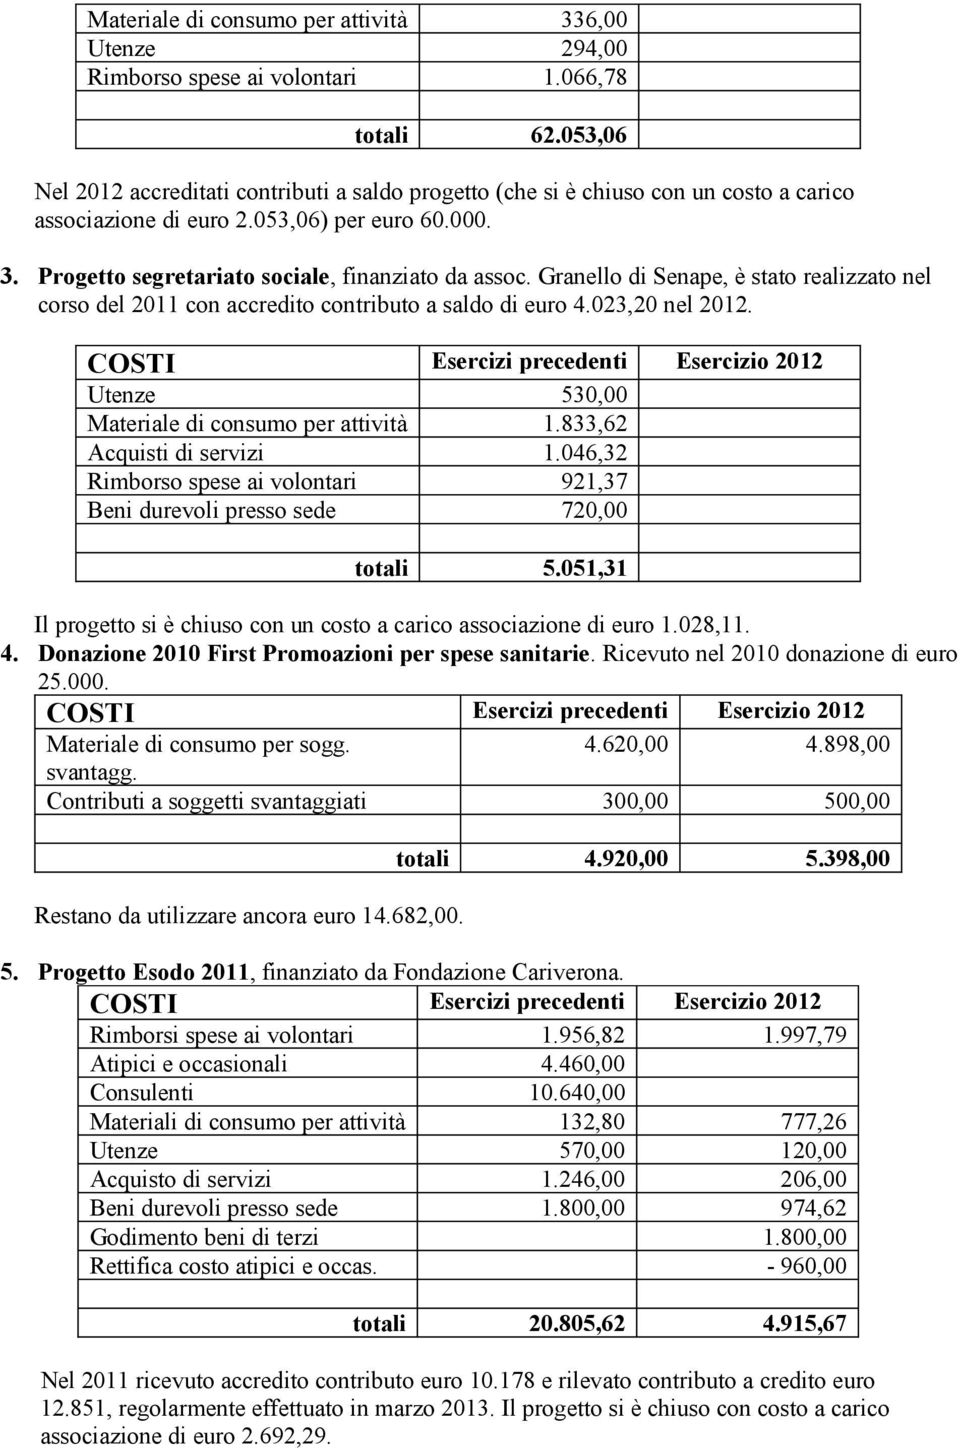 Granello di Senape, è stato realizzato nel corso del 2011 con accredito contributo a saldo di euro 4.023,20 nel 2012. Utenze 530,00 Materiale di consumo per attività 1.833,62 Acquisti di servizi 1.